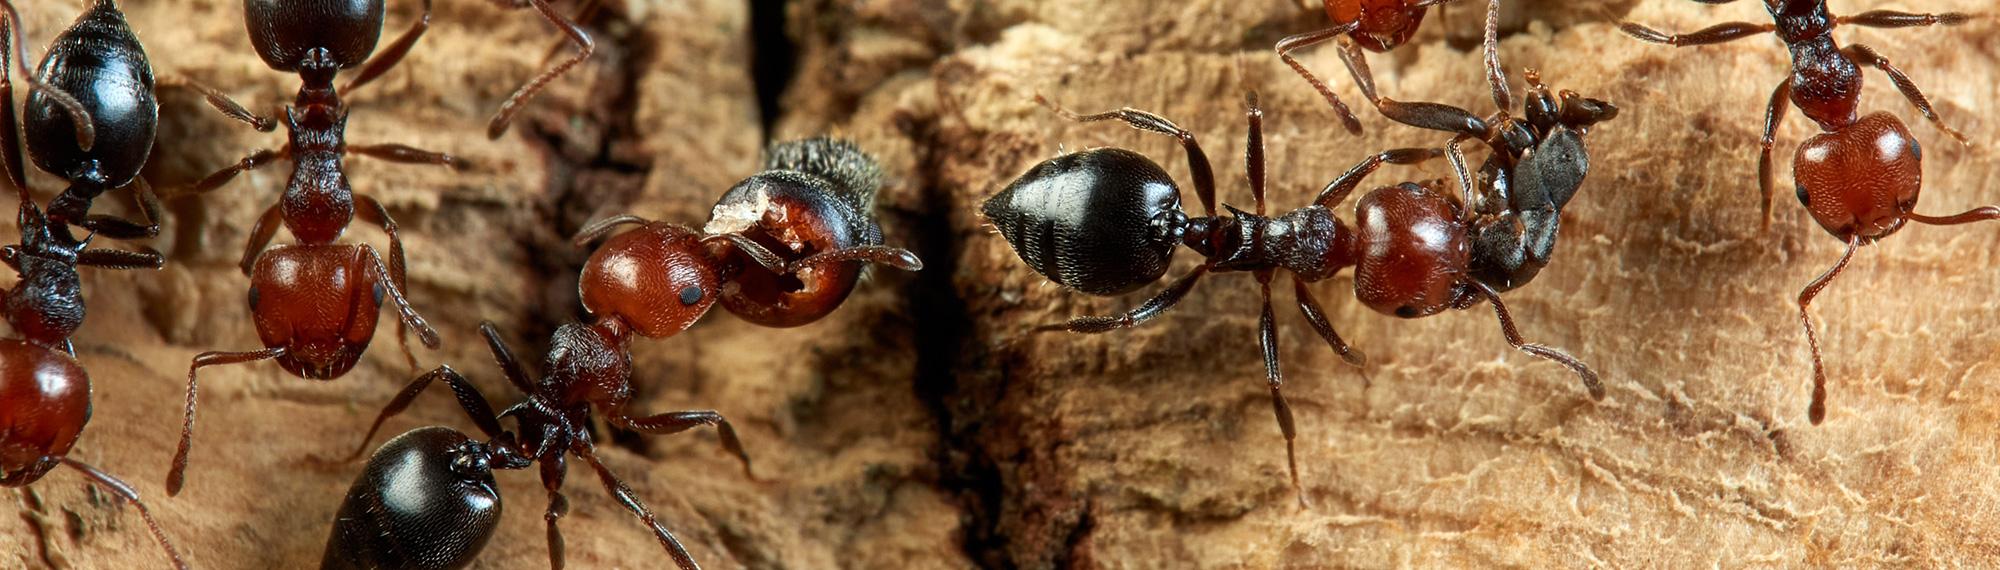 acrobat ants in new mexico